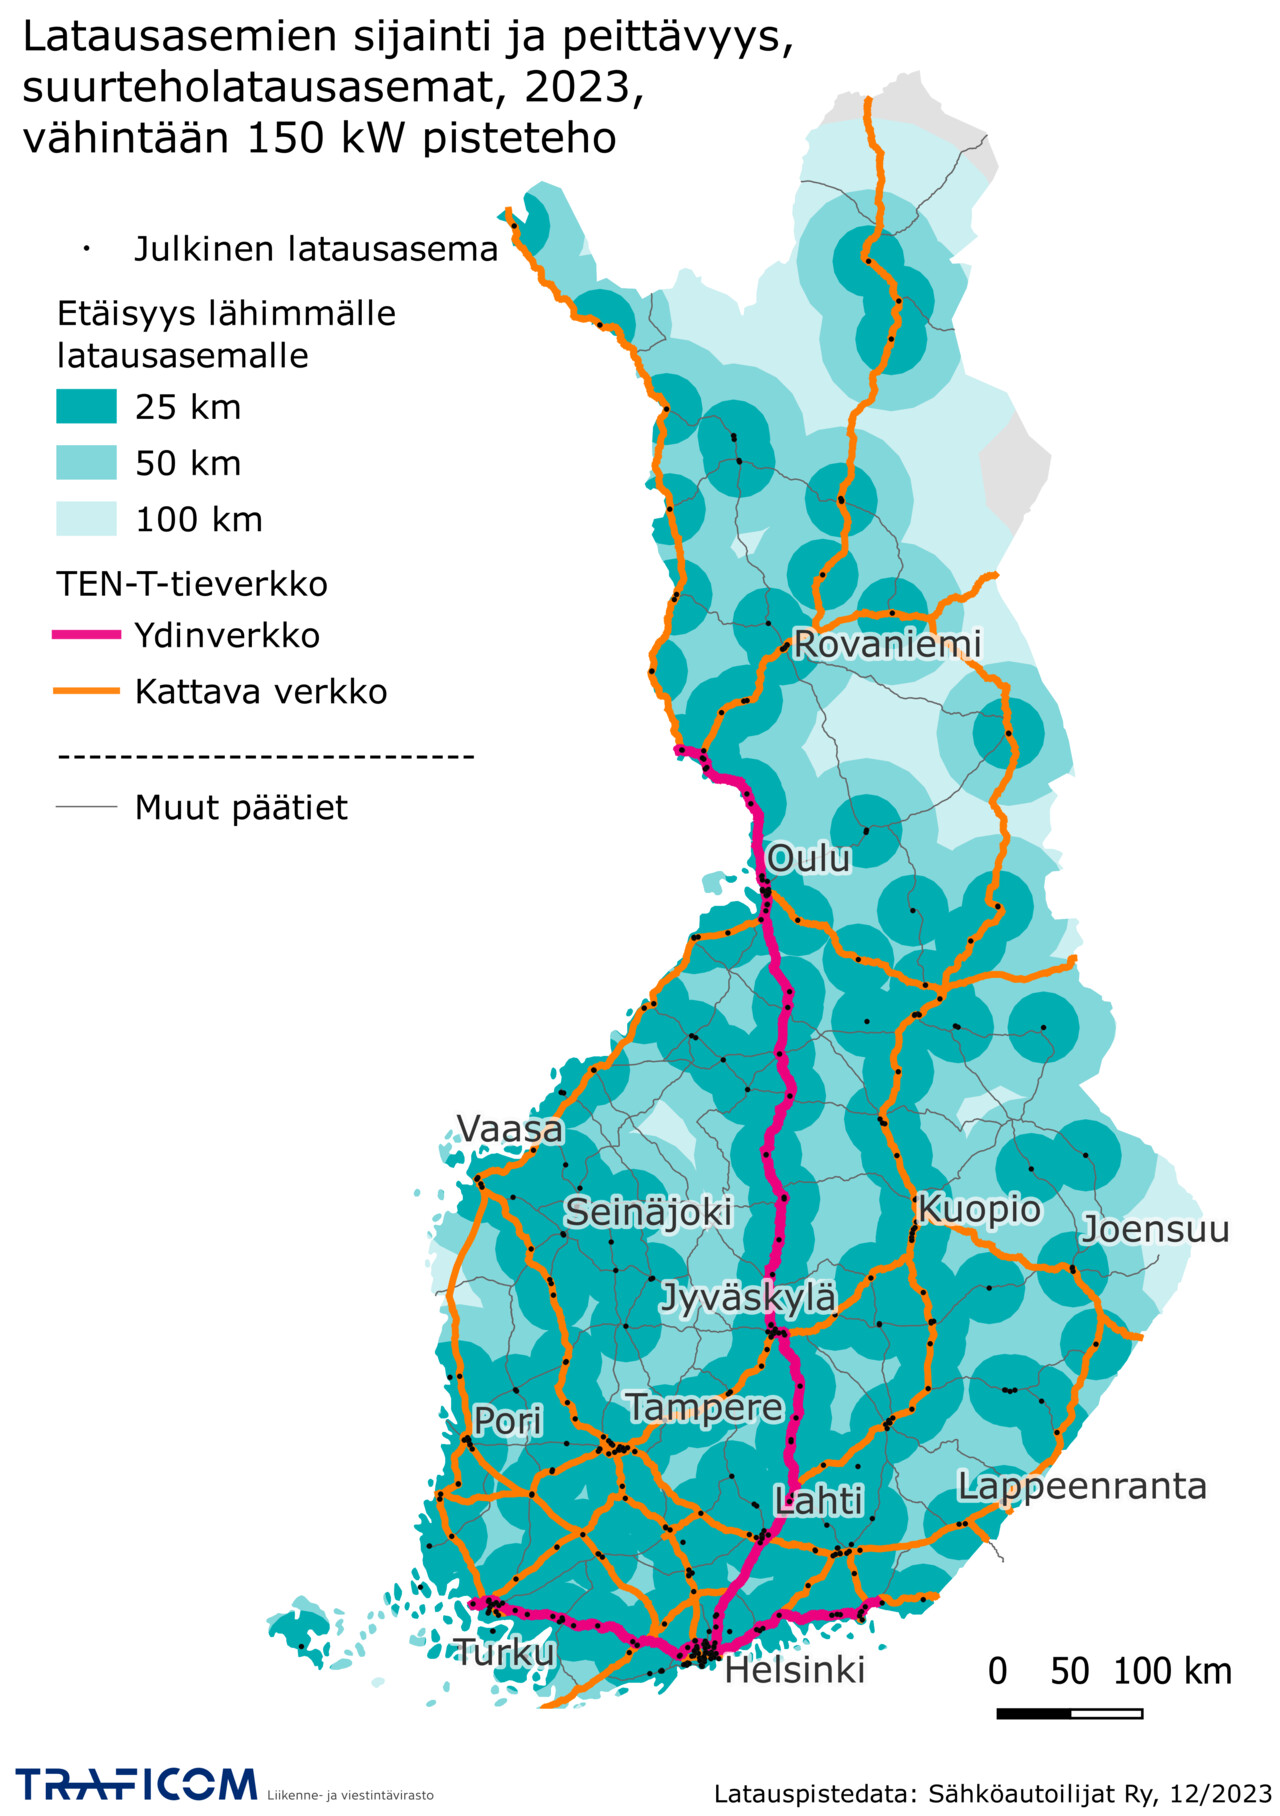 Latausasemien sijainti ja peittävyys Suomessa, suurteholatausasemat 2023, vähintään 150 kw pisteteho